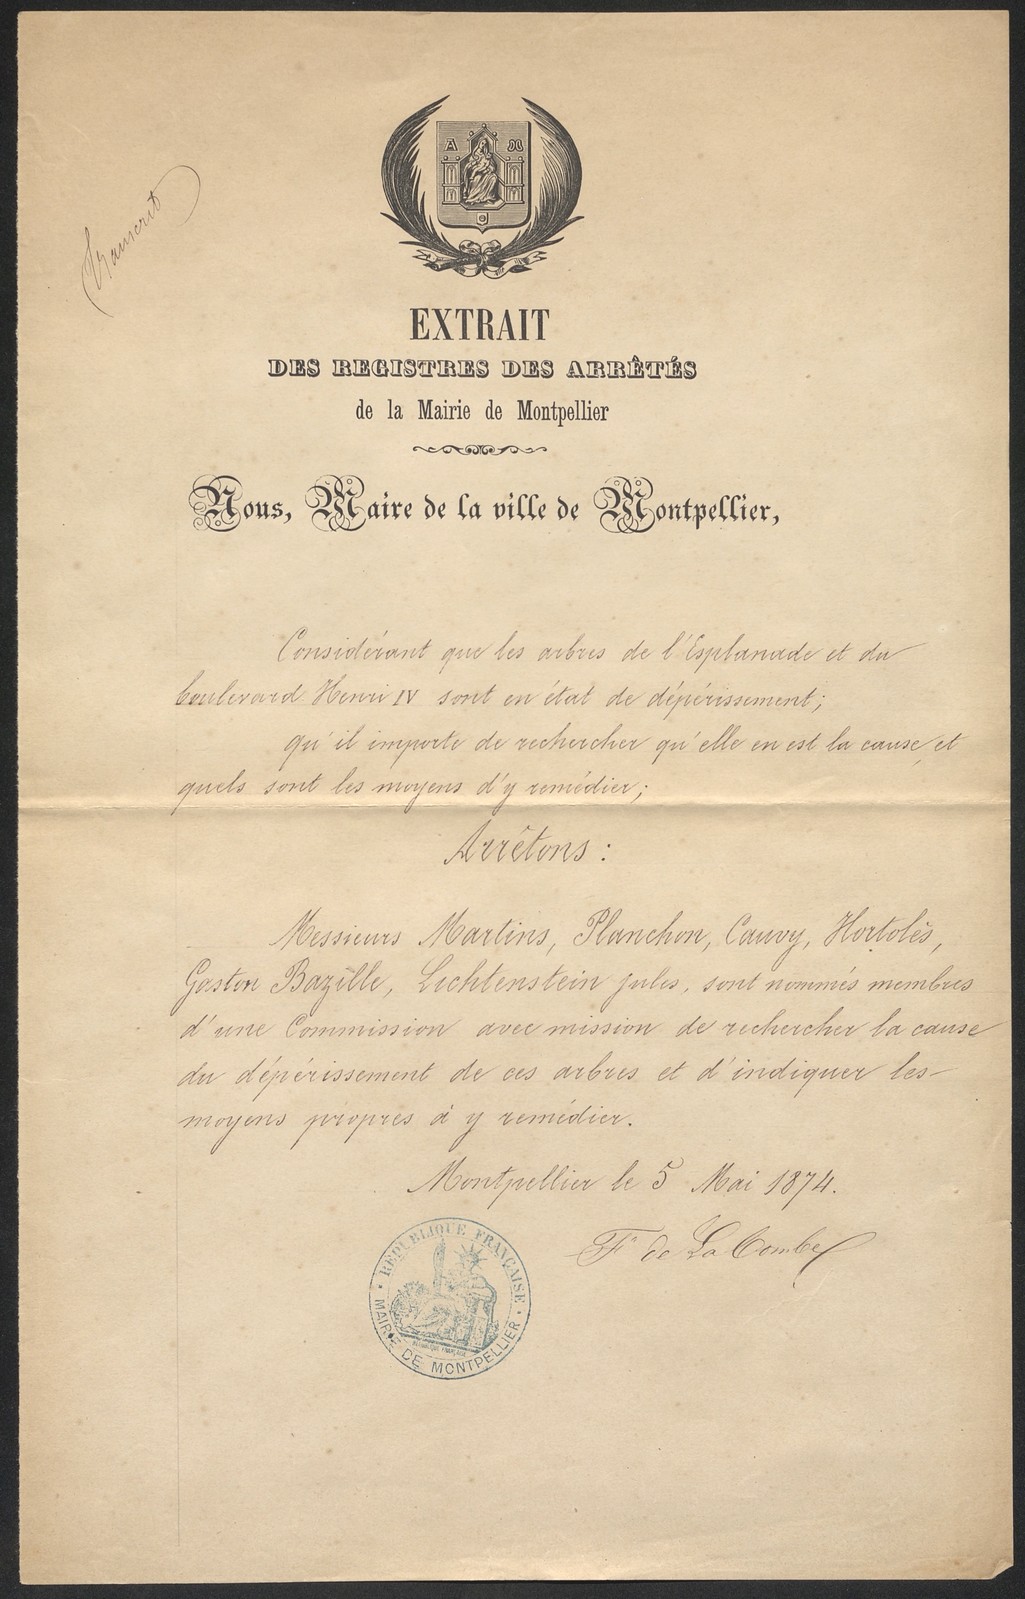 Arrêté création commission, 5 mai 1874. AMM, série O